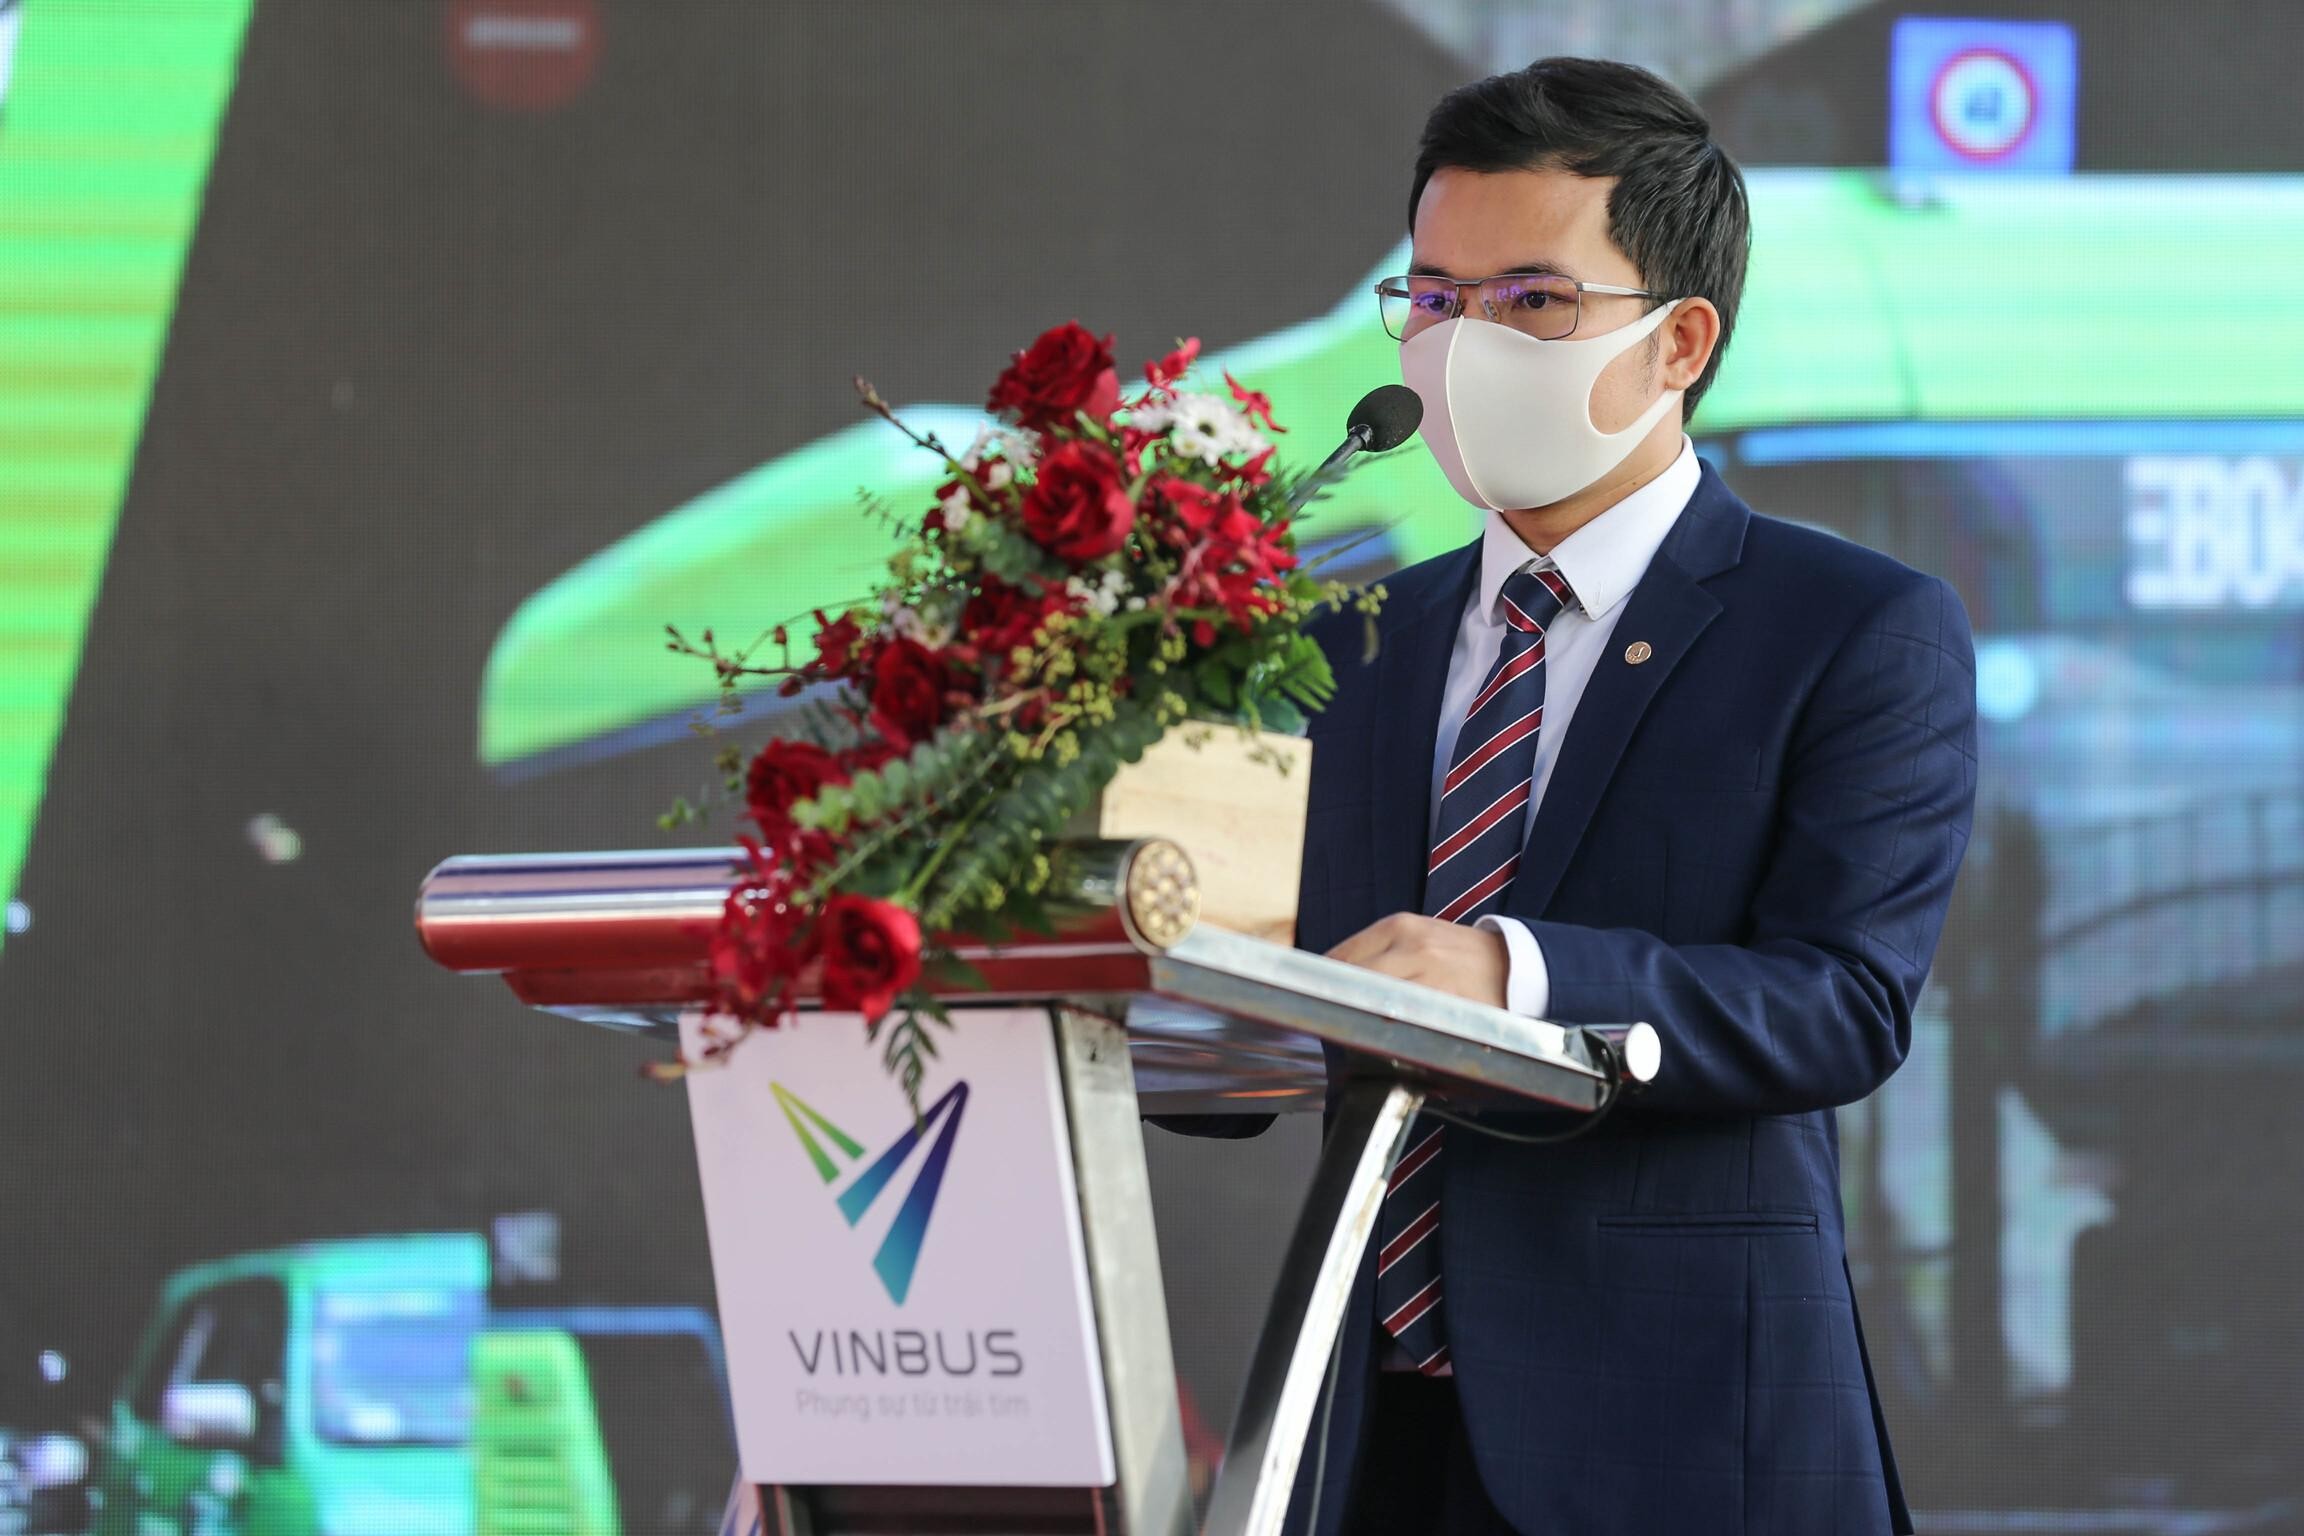 
Trước khi về VinBus, anh Thanh đã từng đảm nhiệm nhiều vị trí chủ chốt tại nhiều công ty
